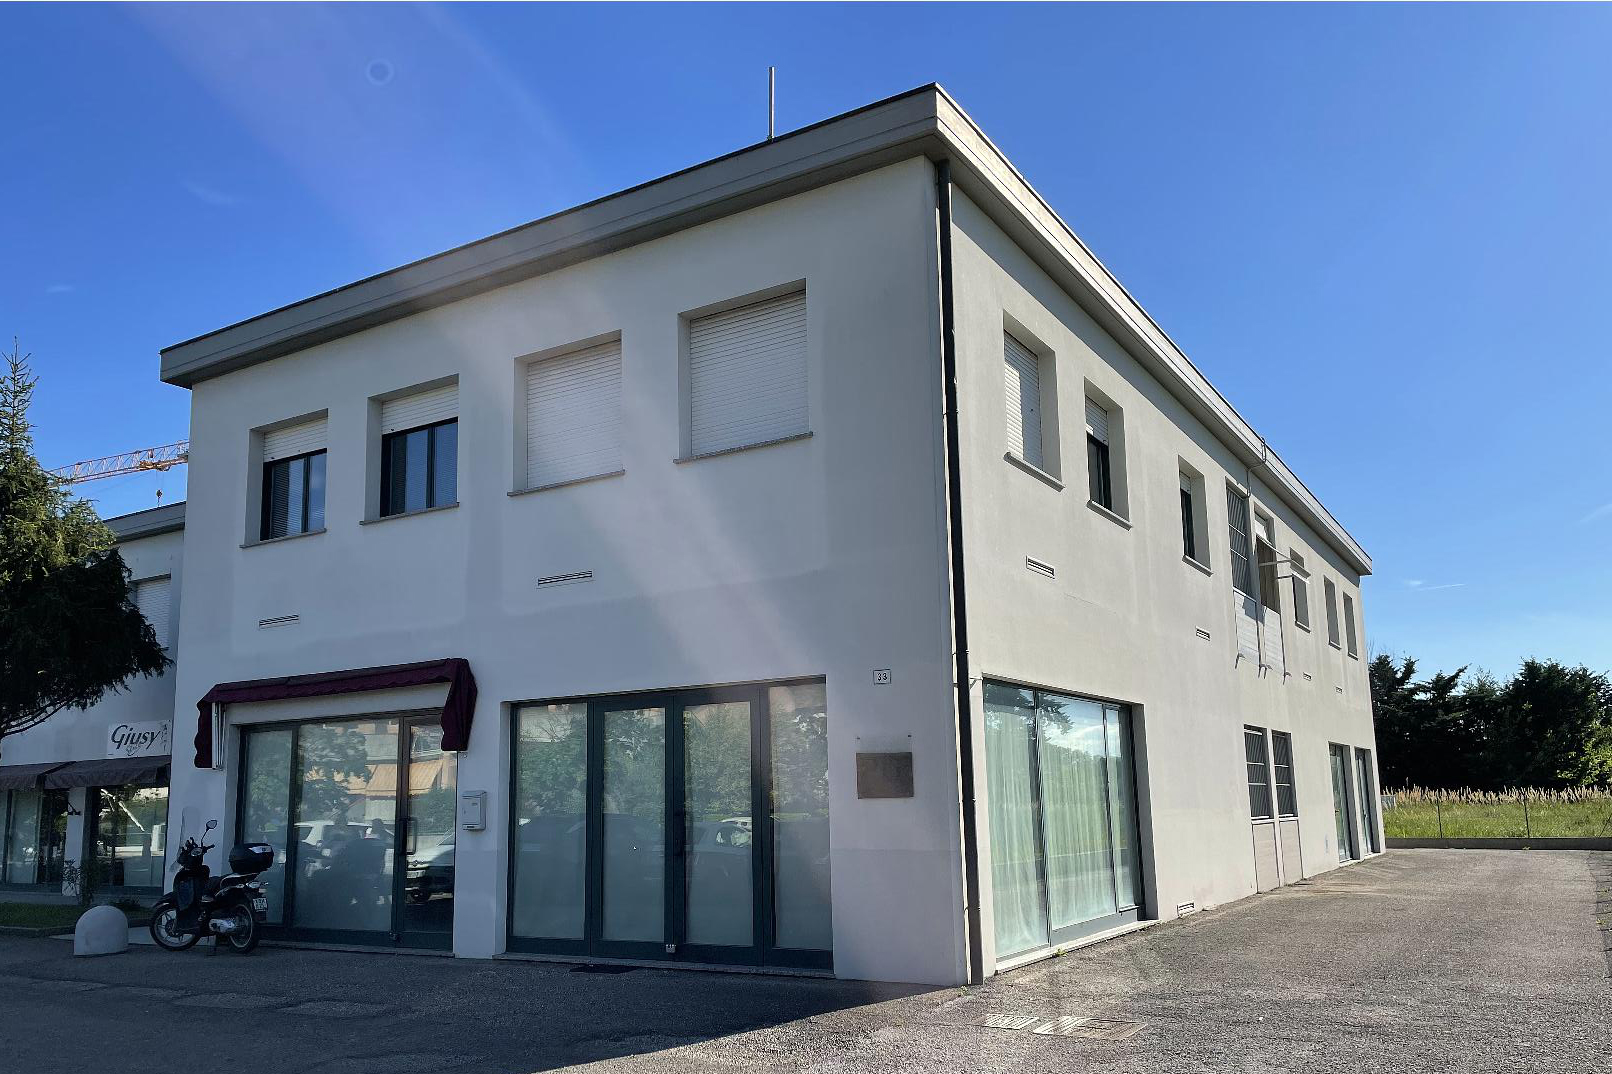 Affitto negozio/ufficio Pesaro - Zona Villa San Martino (NE30)